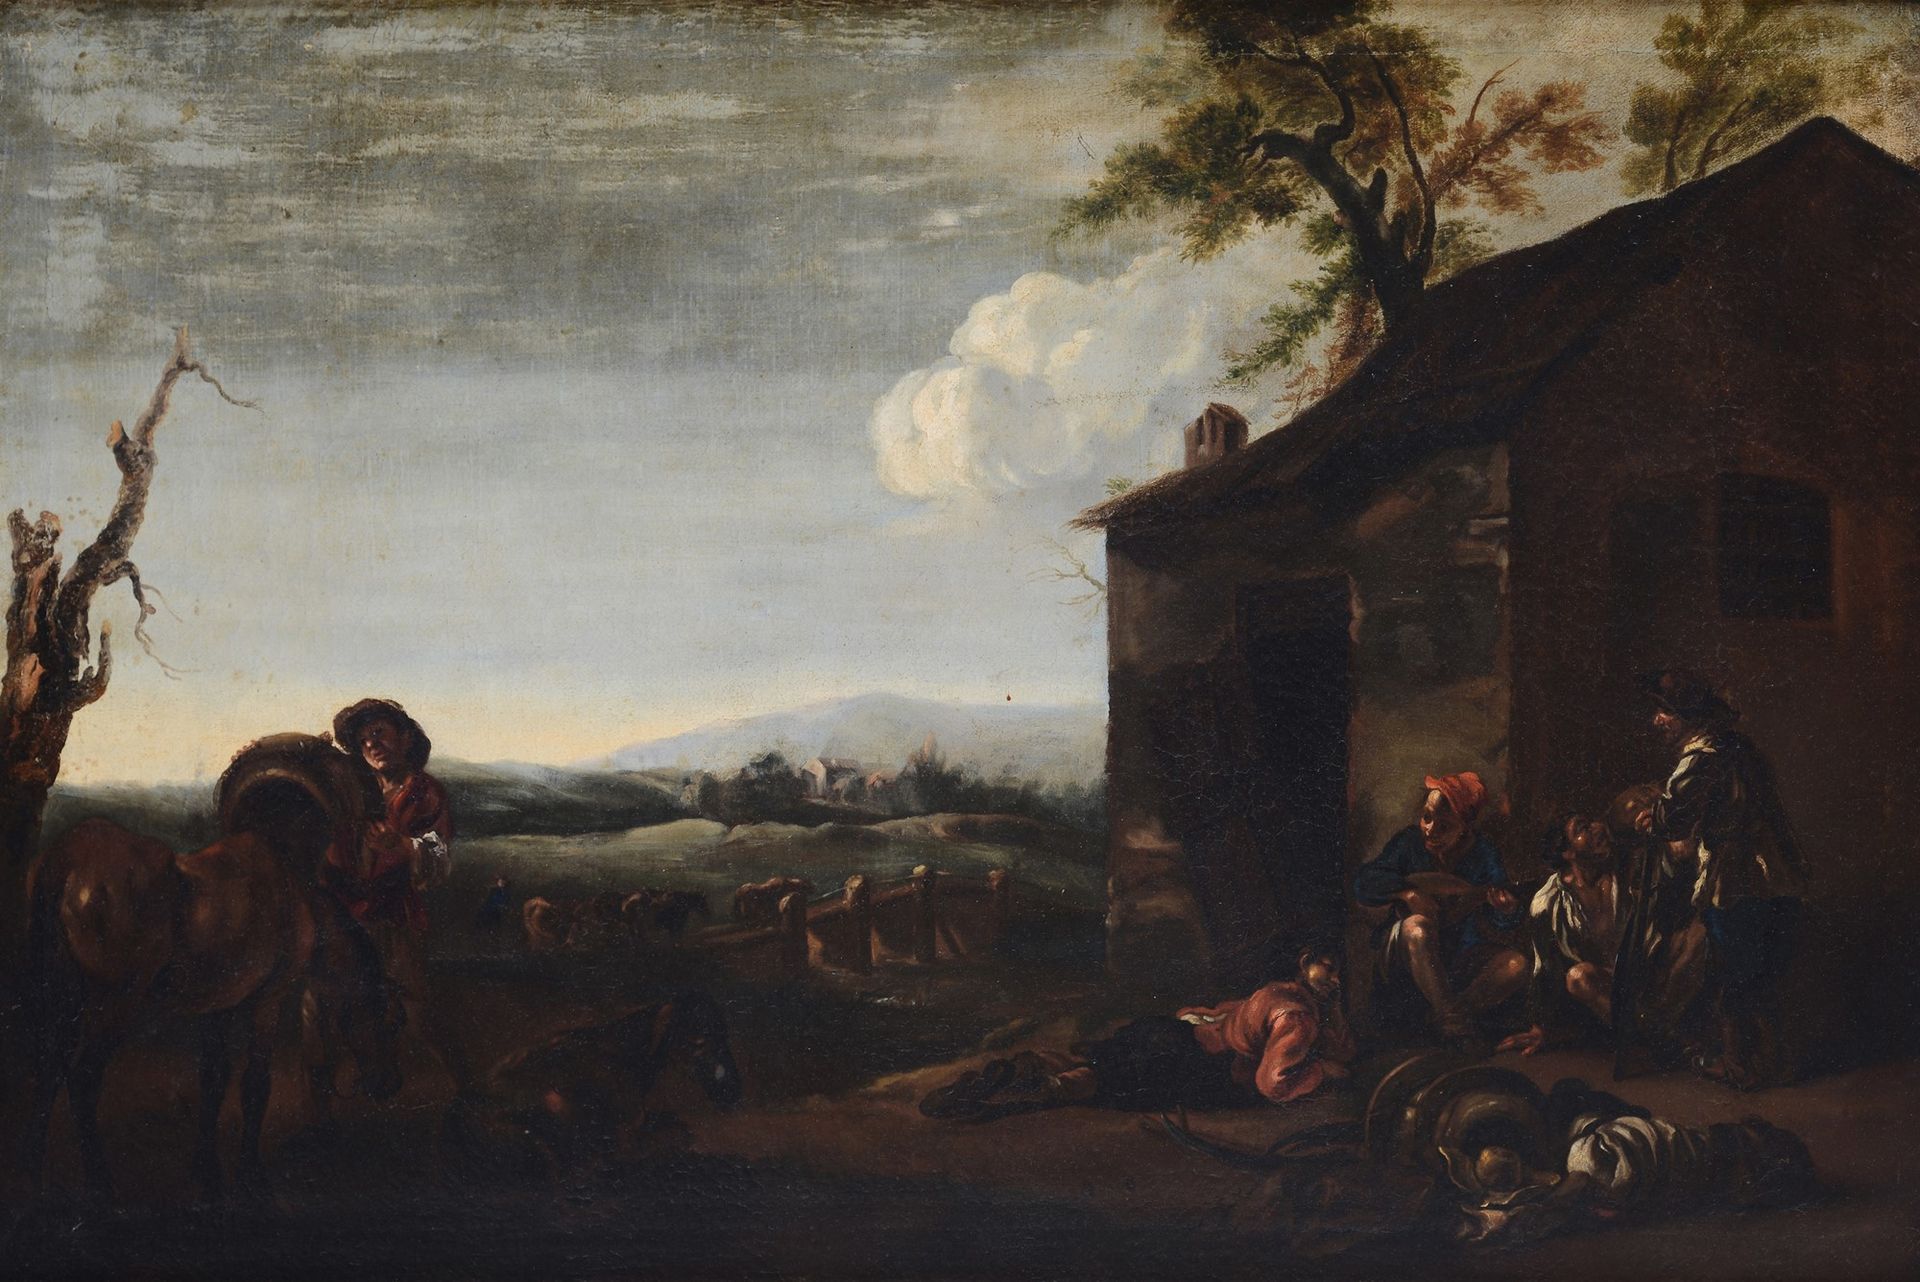 Scuola dei bamboccianti, XVII sec. - Scena di genere Huile sur toile, 51x76 cm.